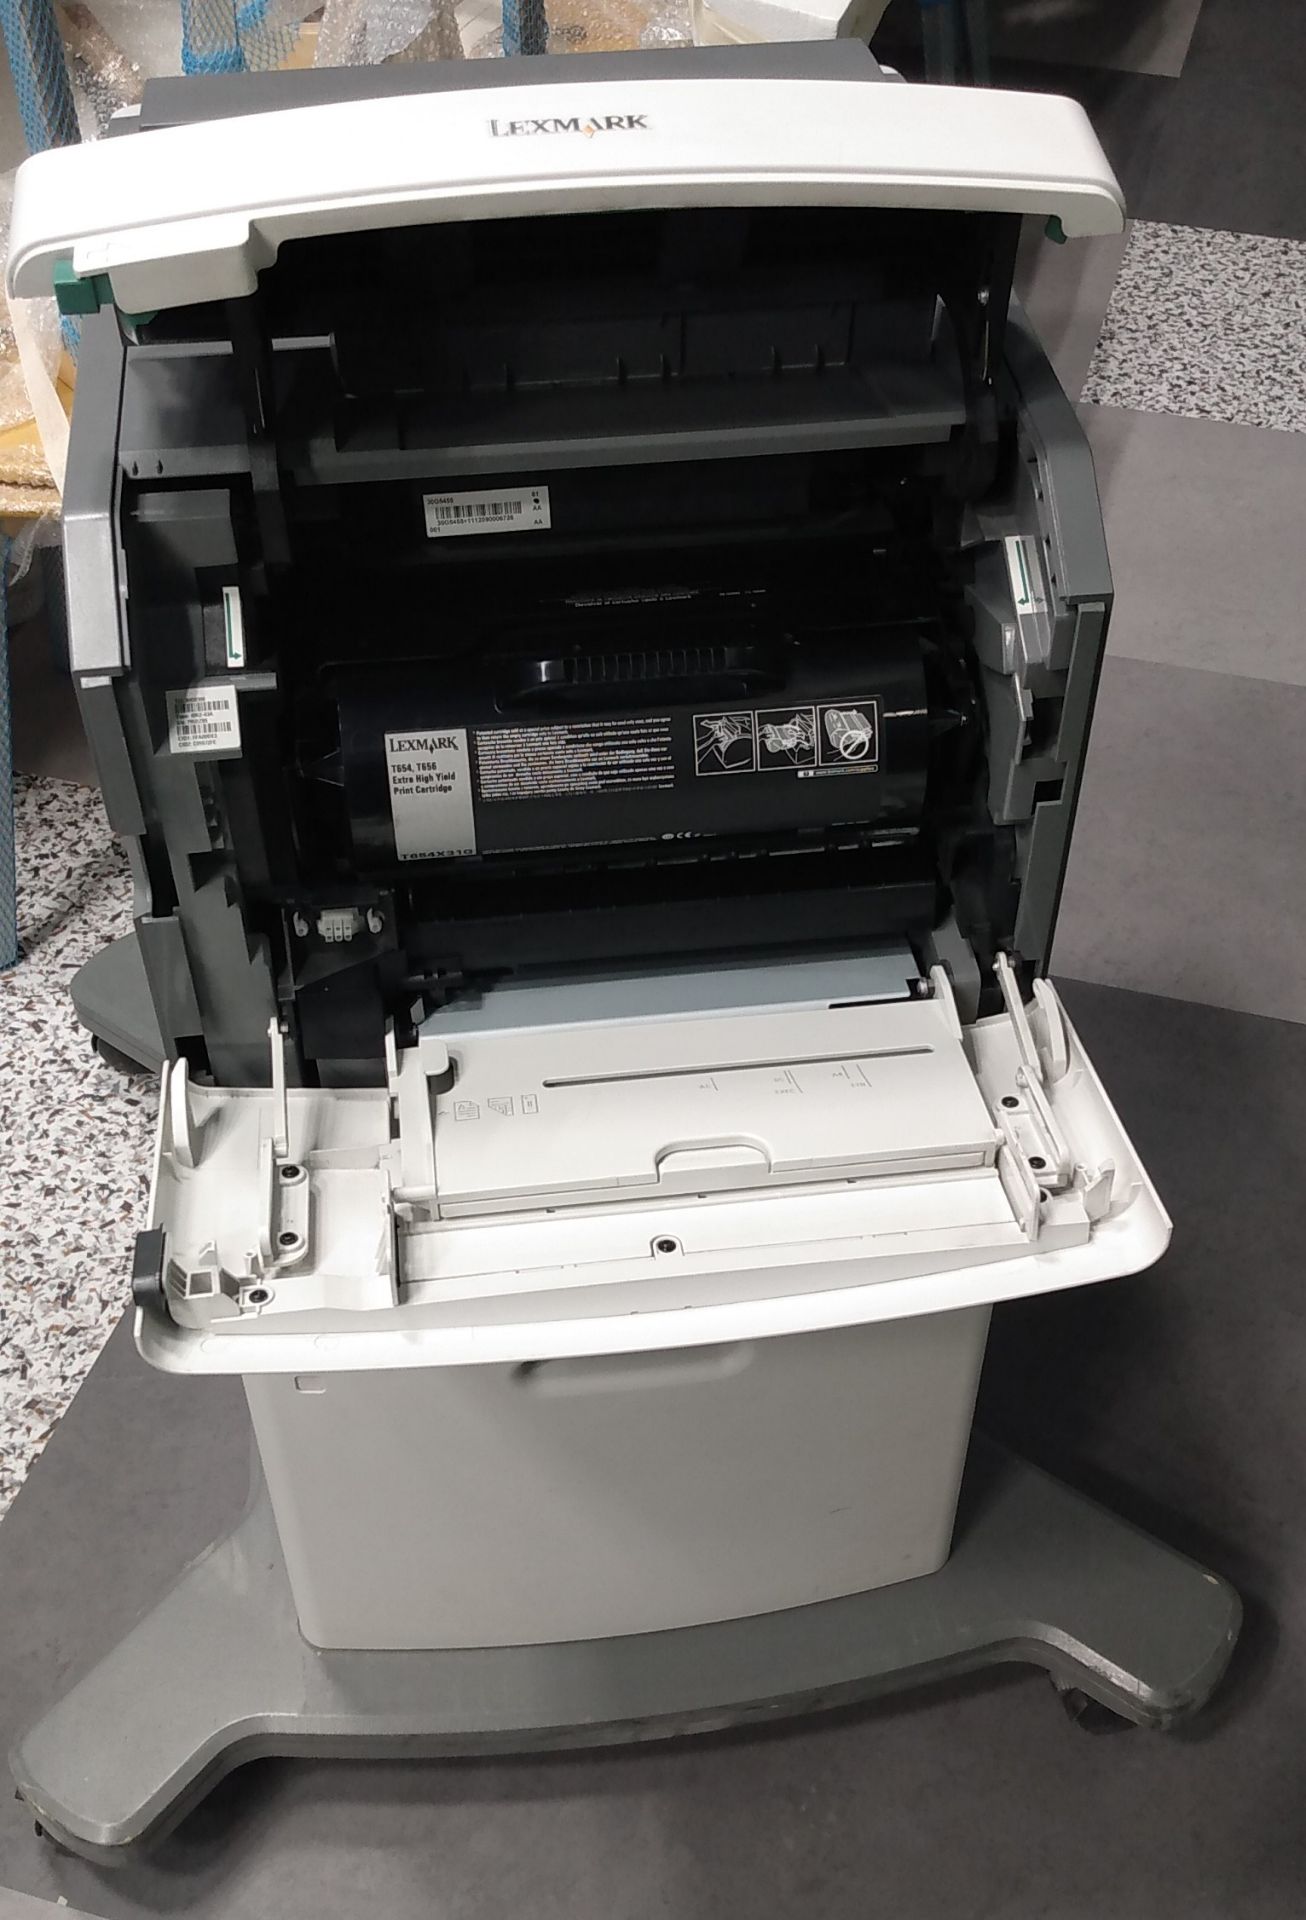 5 Impresoras Lexmark T654dn, Modelo Ubicación: AZCAPOTZALCO